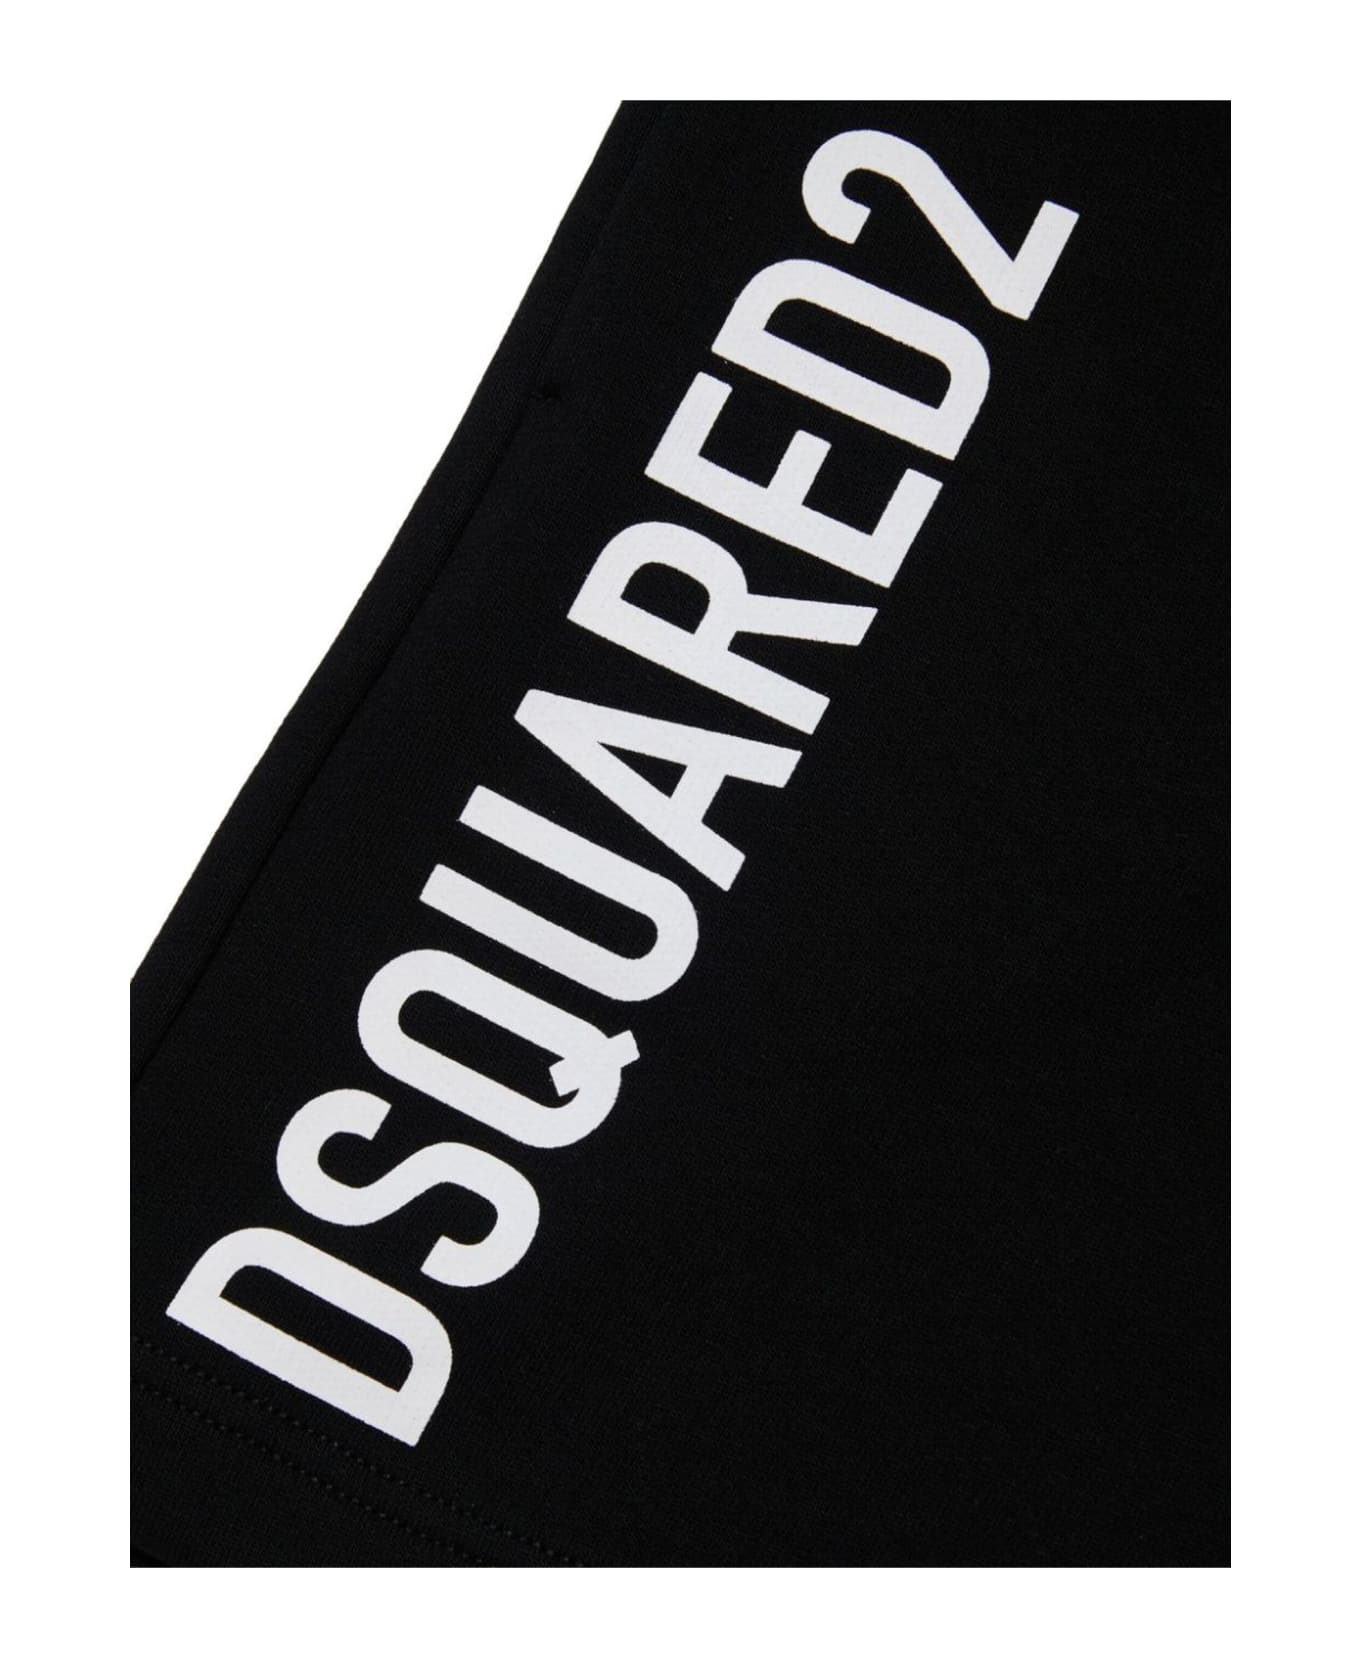 Dsquared2 Shorts Black - Black